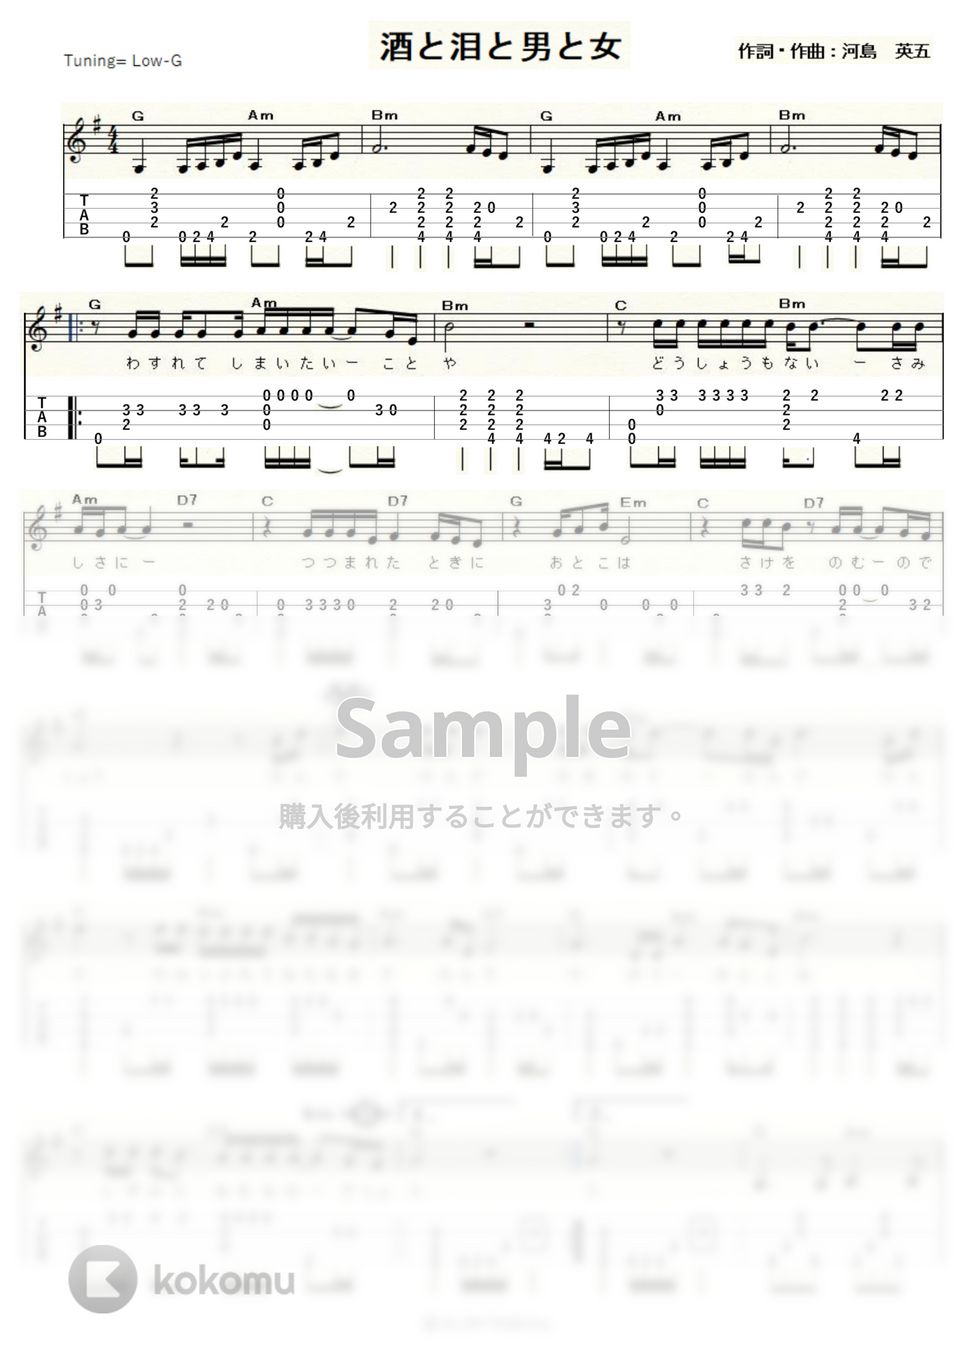 河島英五 - 酒と泪と男と女 (ｳｸﾚﾚｿﾛ/Low-G/中級) タブ + 五線譜 by